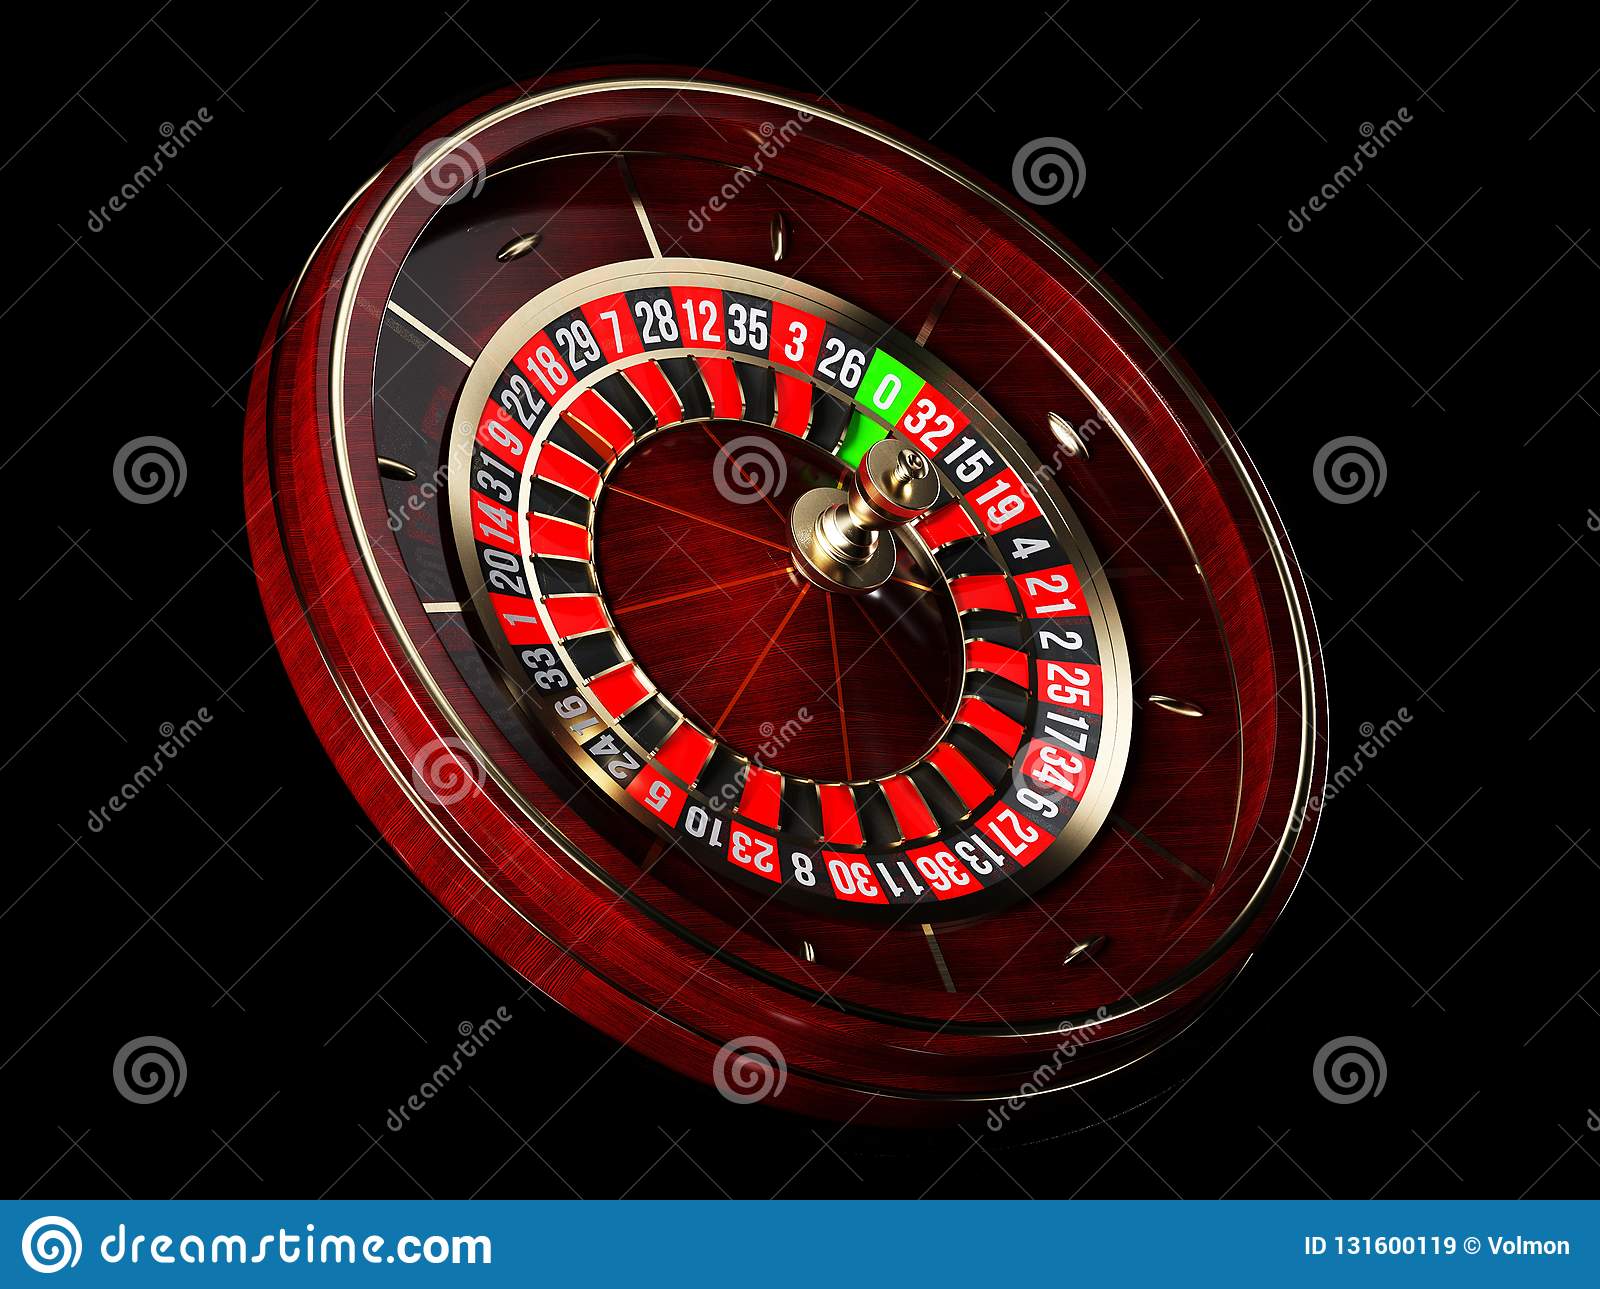 Kroon casino jocuri de noroc online